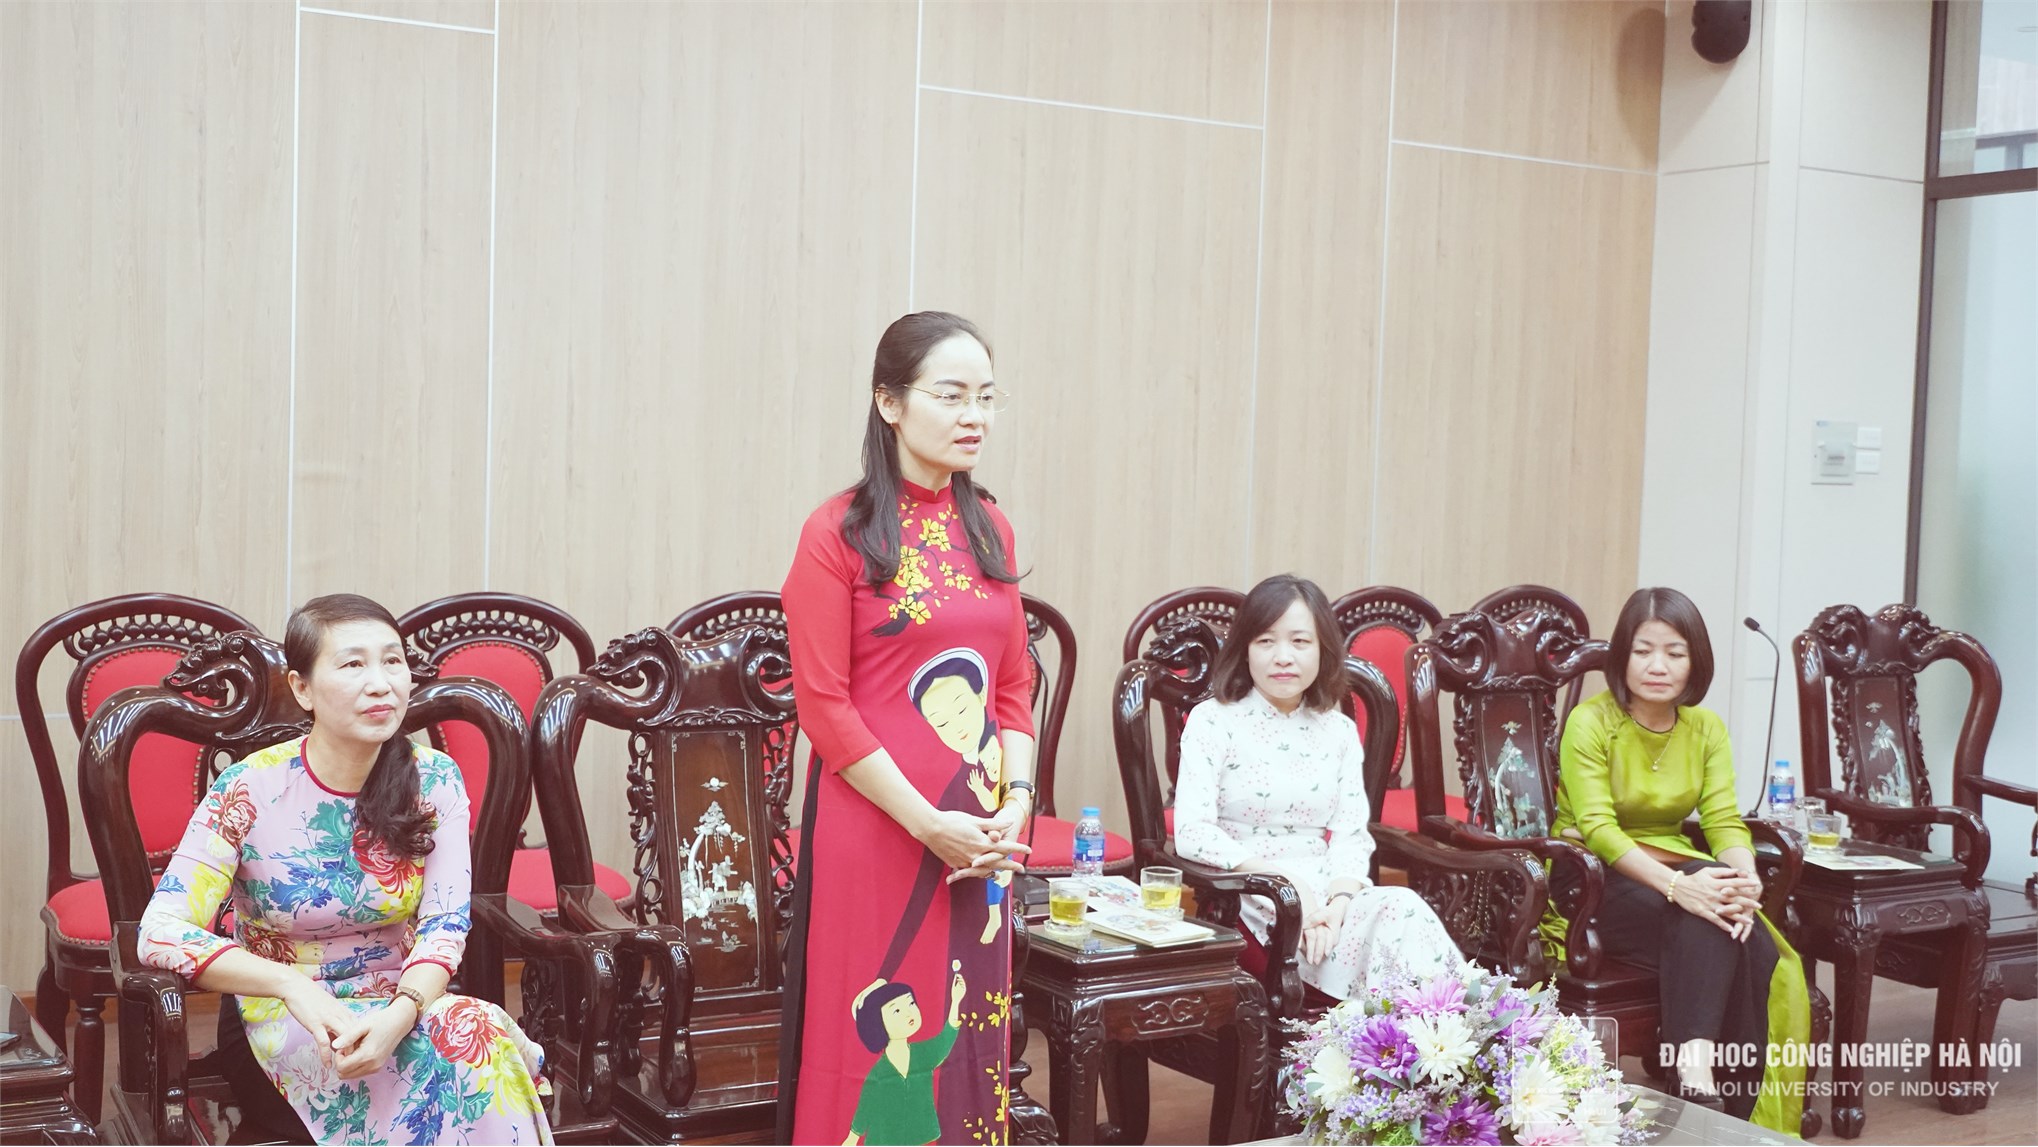 Đại học Công nghiệp Hà Nội chúc mừng Ngày thành lập Hội liên hiệp Phụ nữ Việt Nam 20/10